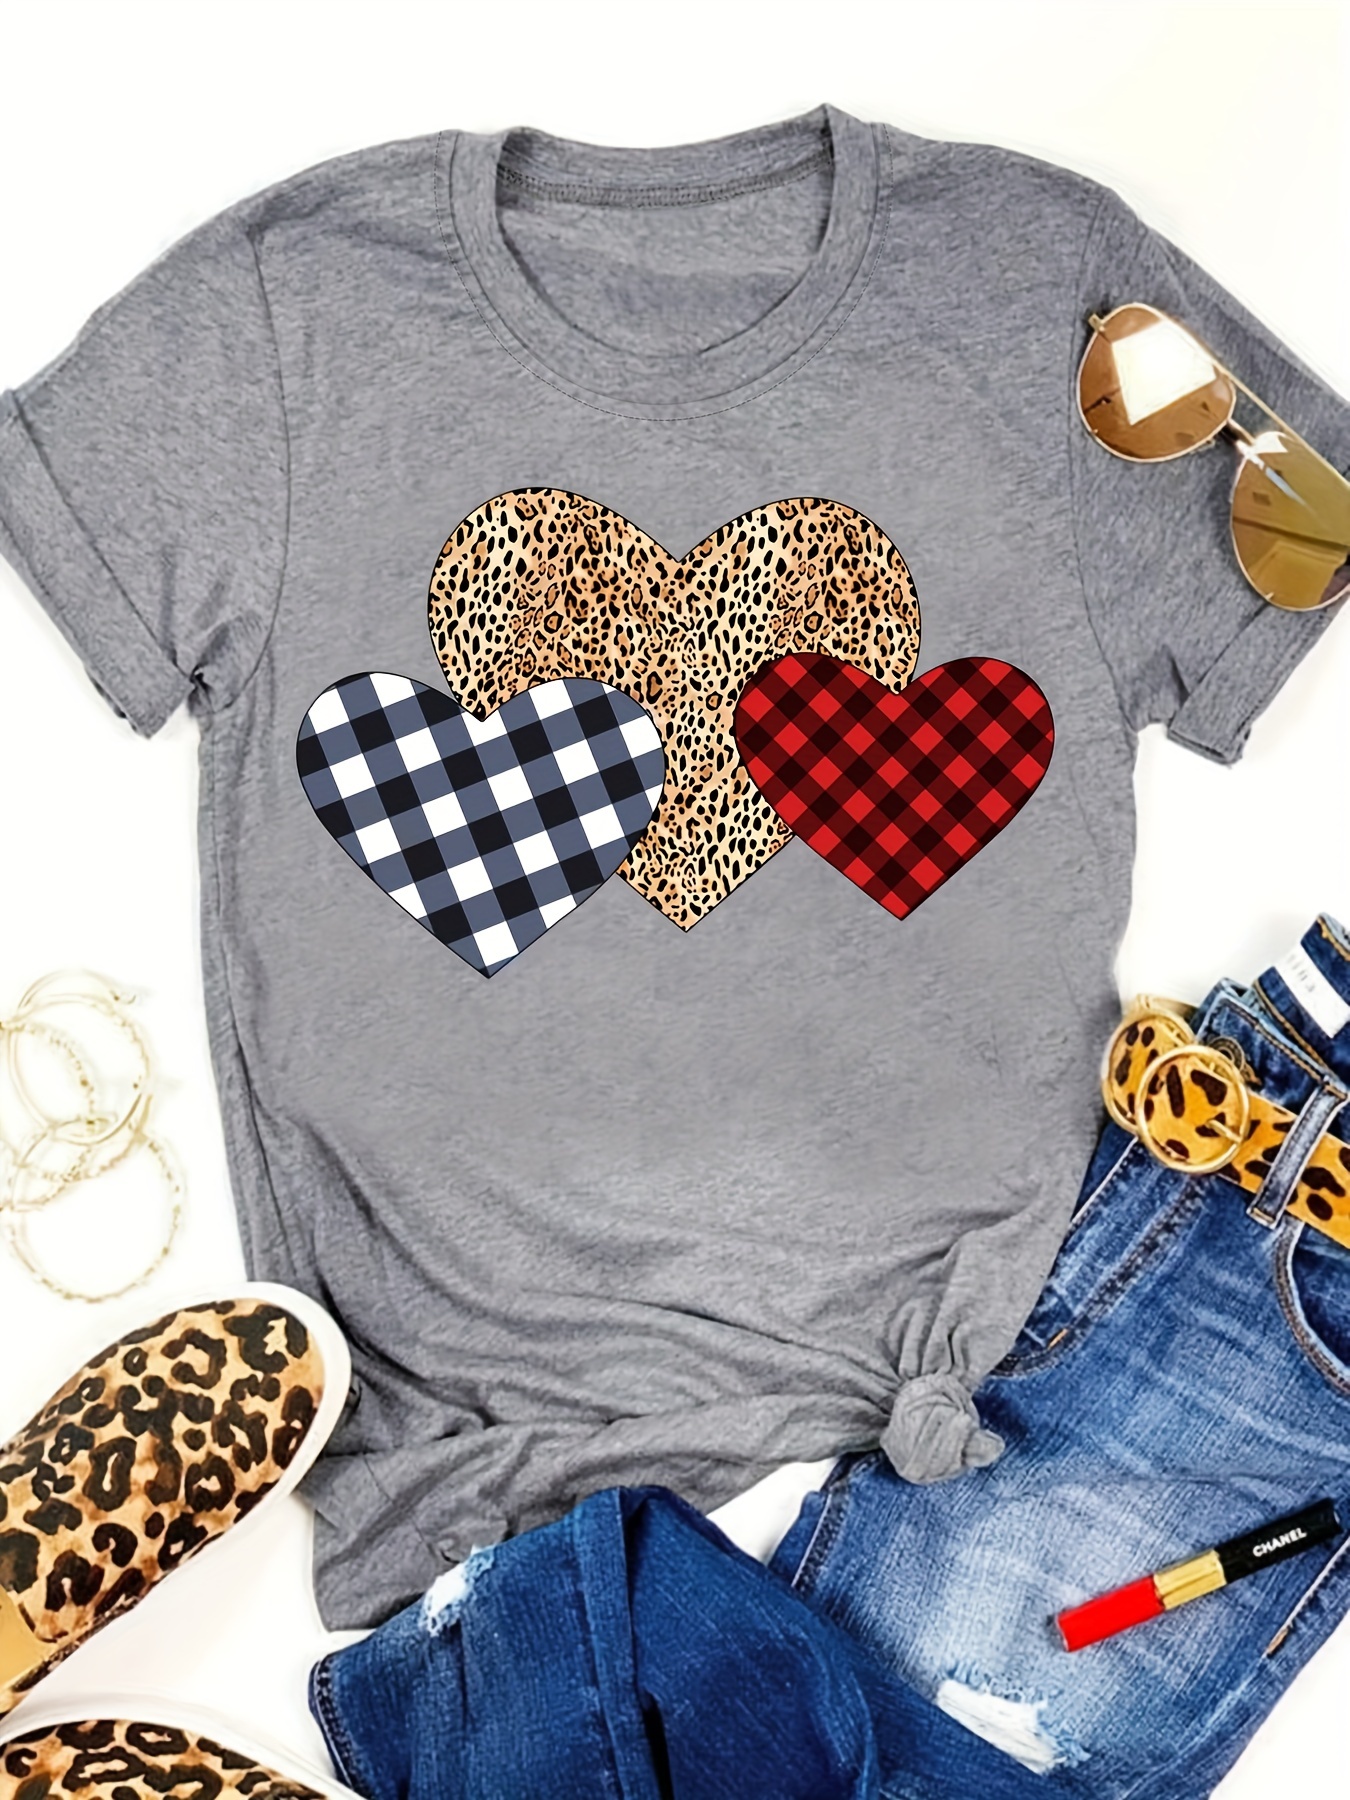 Camiseta De Cuadros De Búfalo Y Corazón De Leopardo, Camiseta